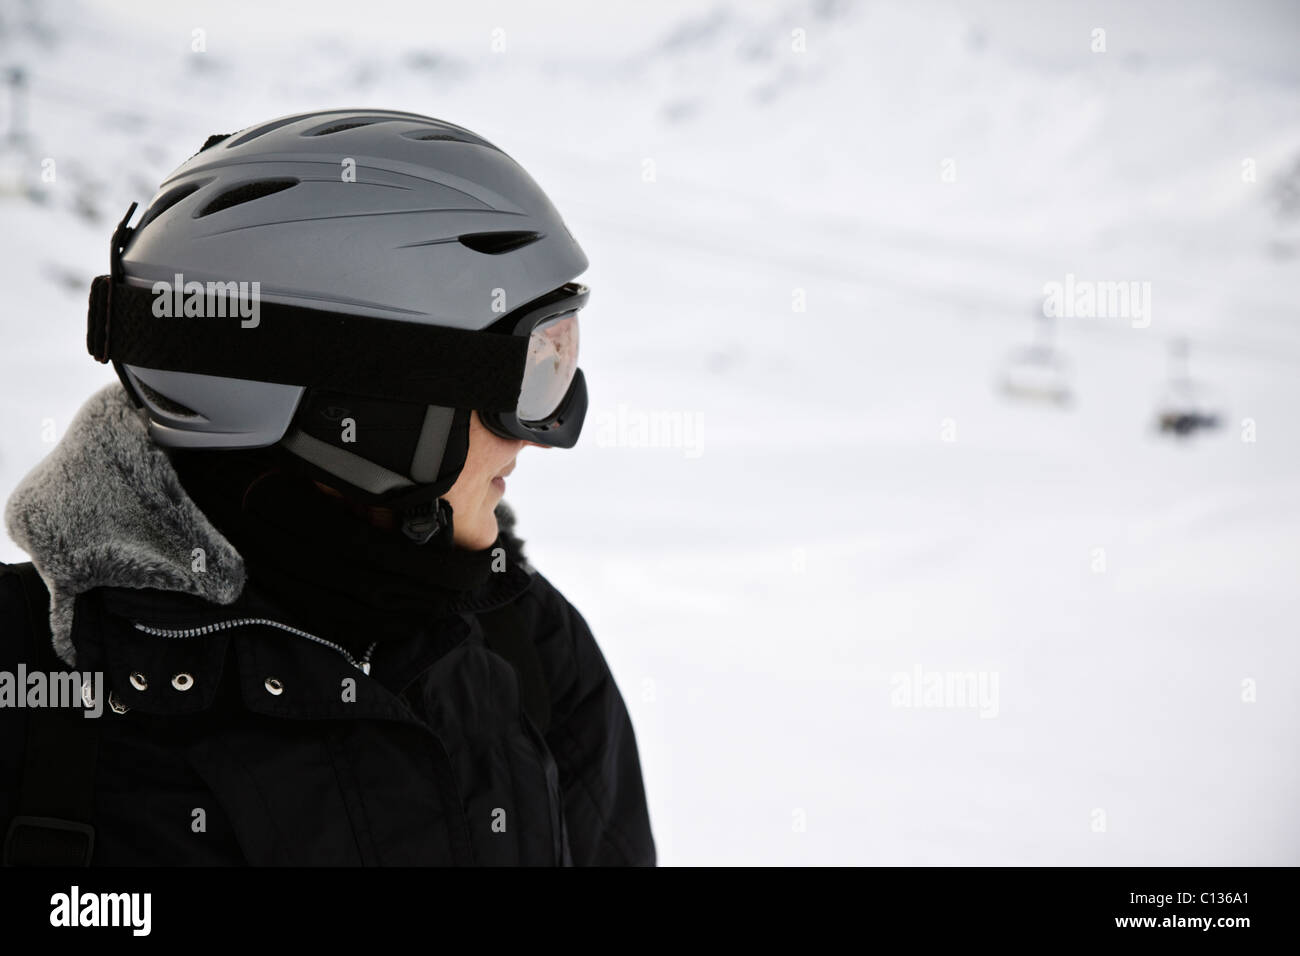 Profil de skieur femelle en sécurité, casque, lunettes et combinaison de ski noire dans la station française de Val d'Isère Banque D'Images